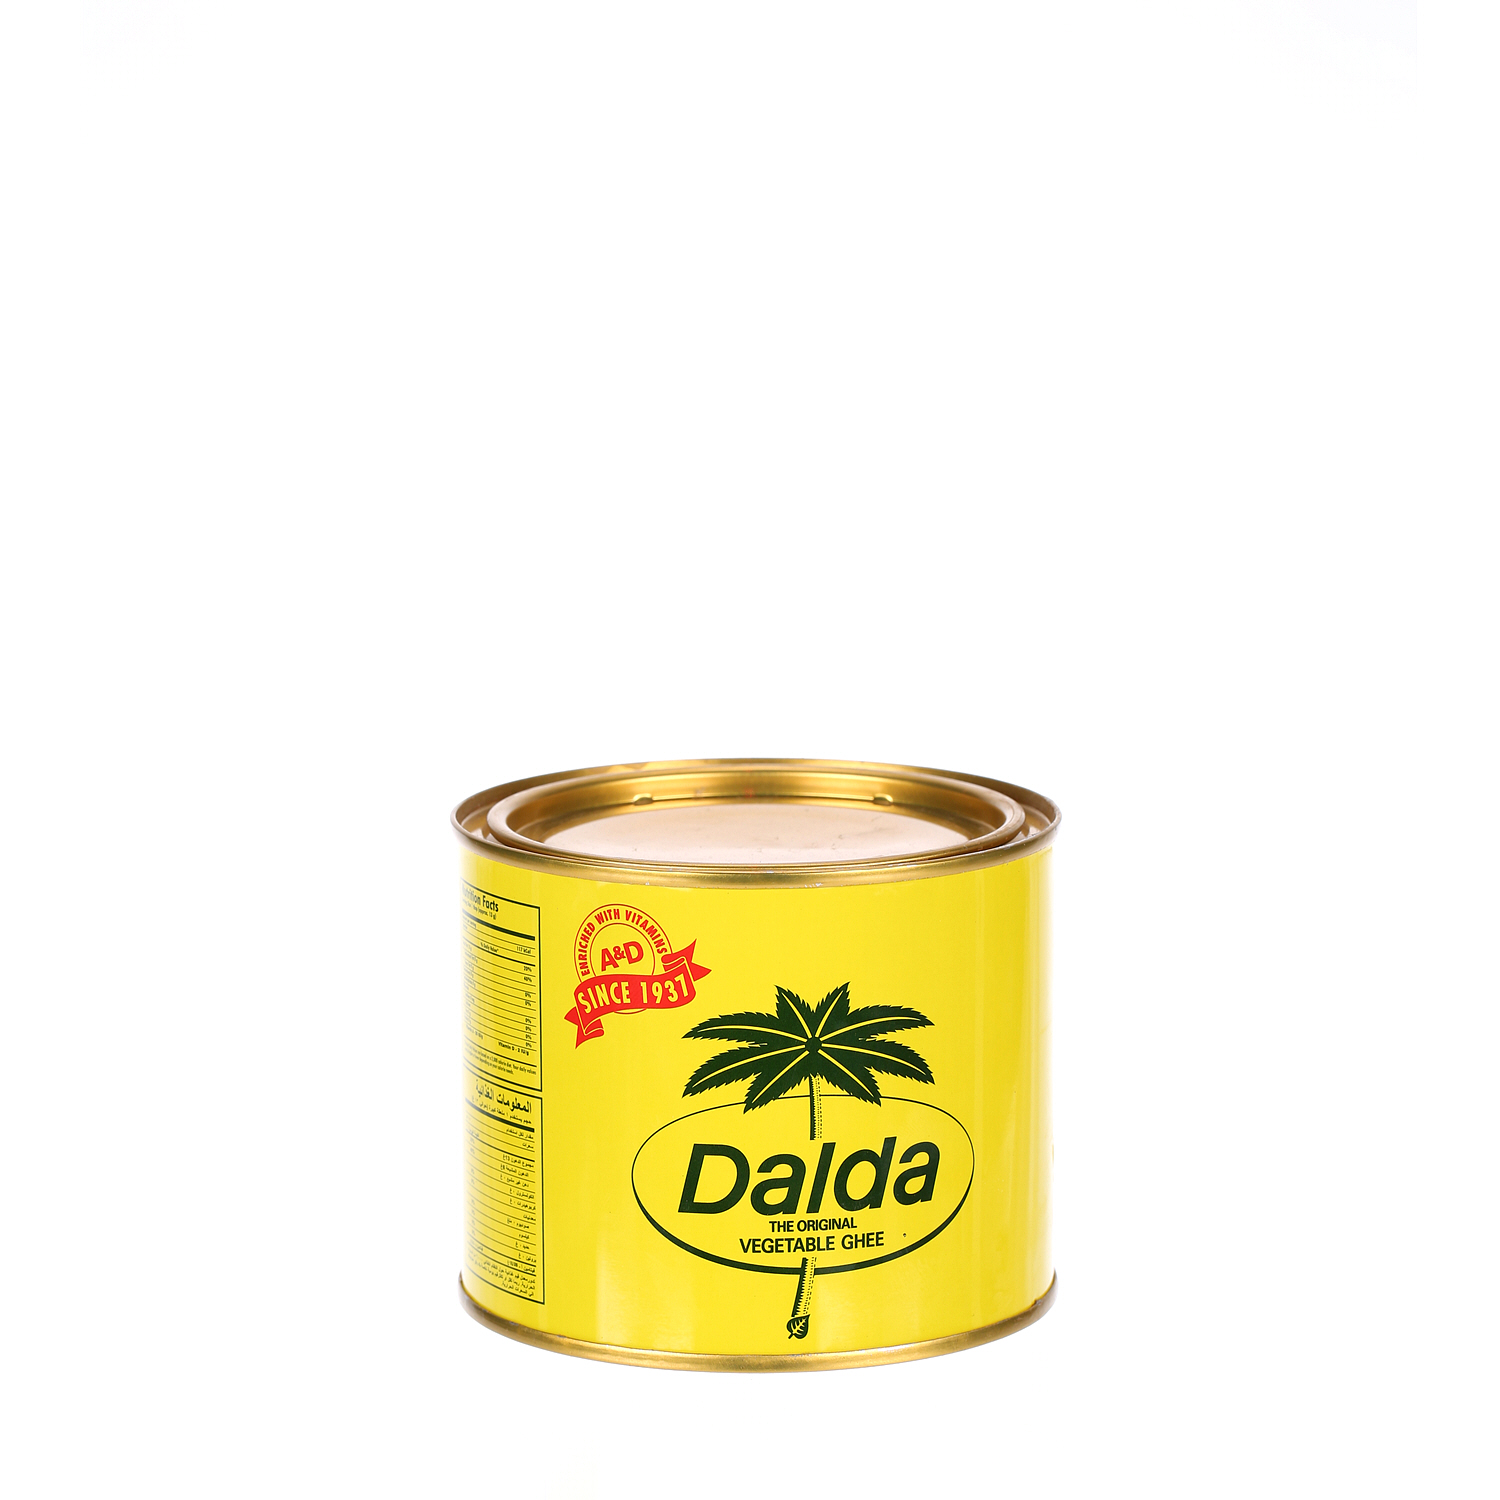 Dalda Vegetable Ghee 500 g